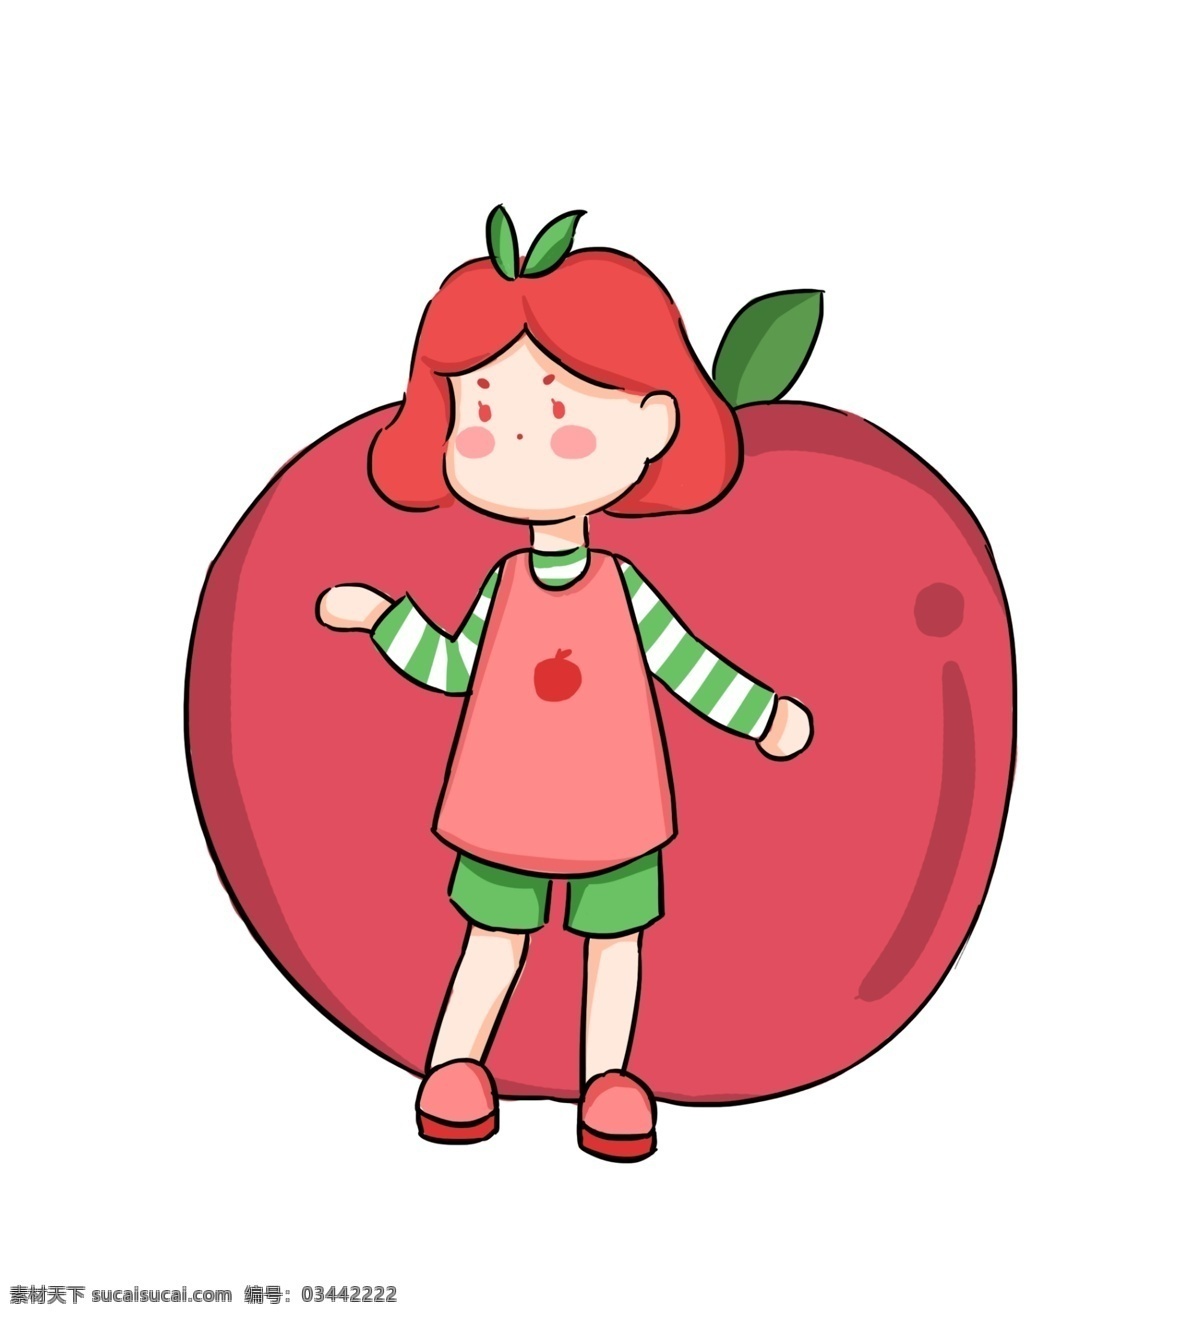 夏日 苹果 女孩 拟人 水果 卡通 创意 插画 红色